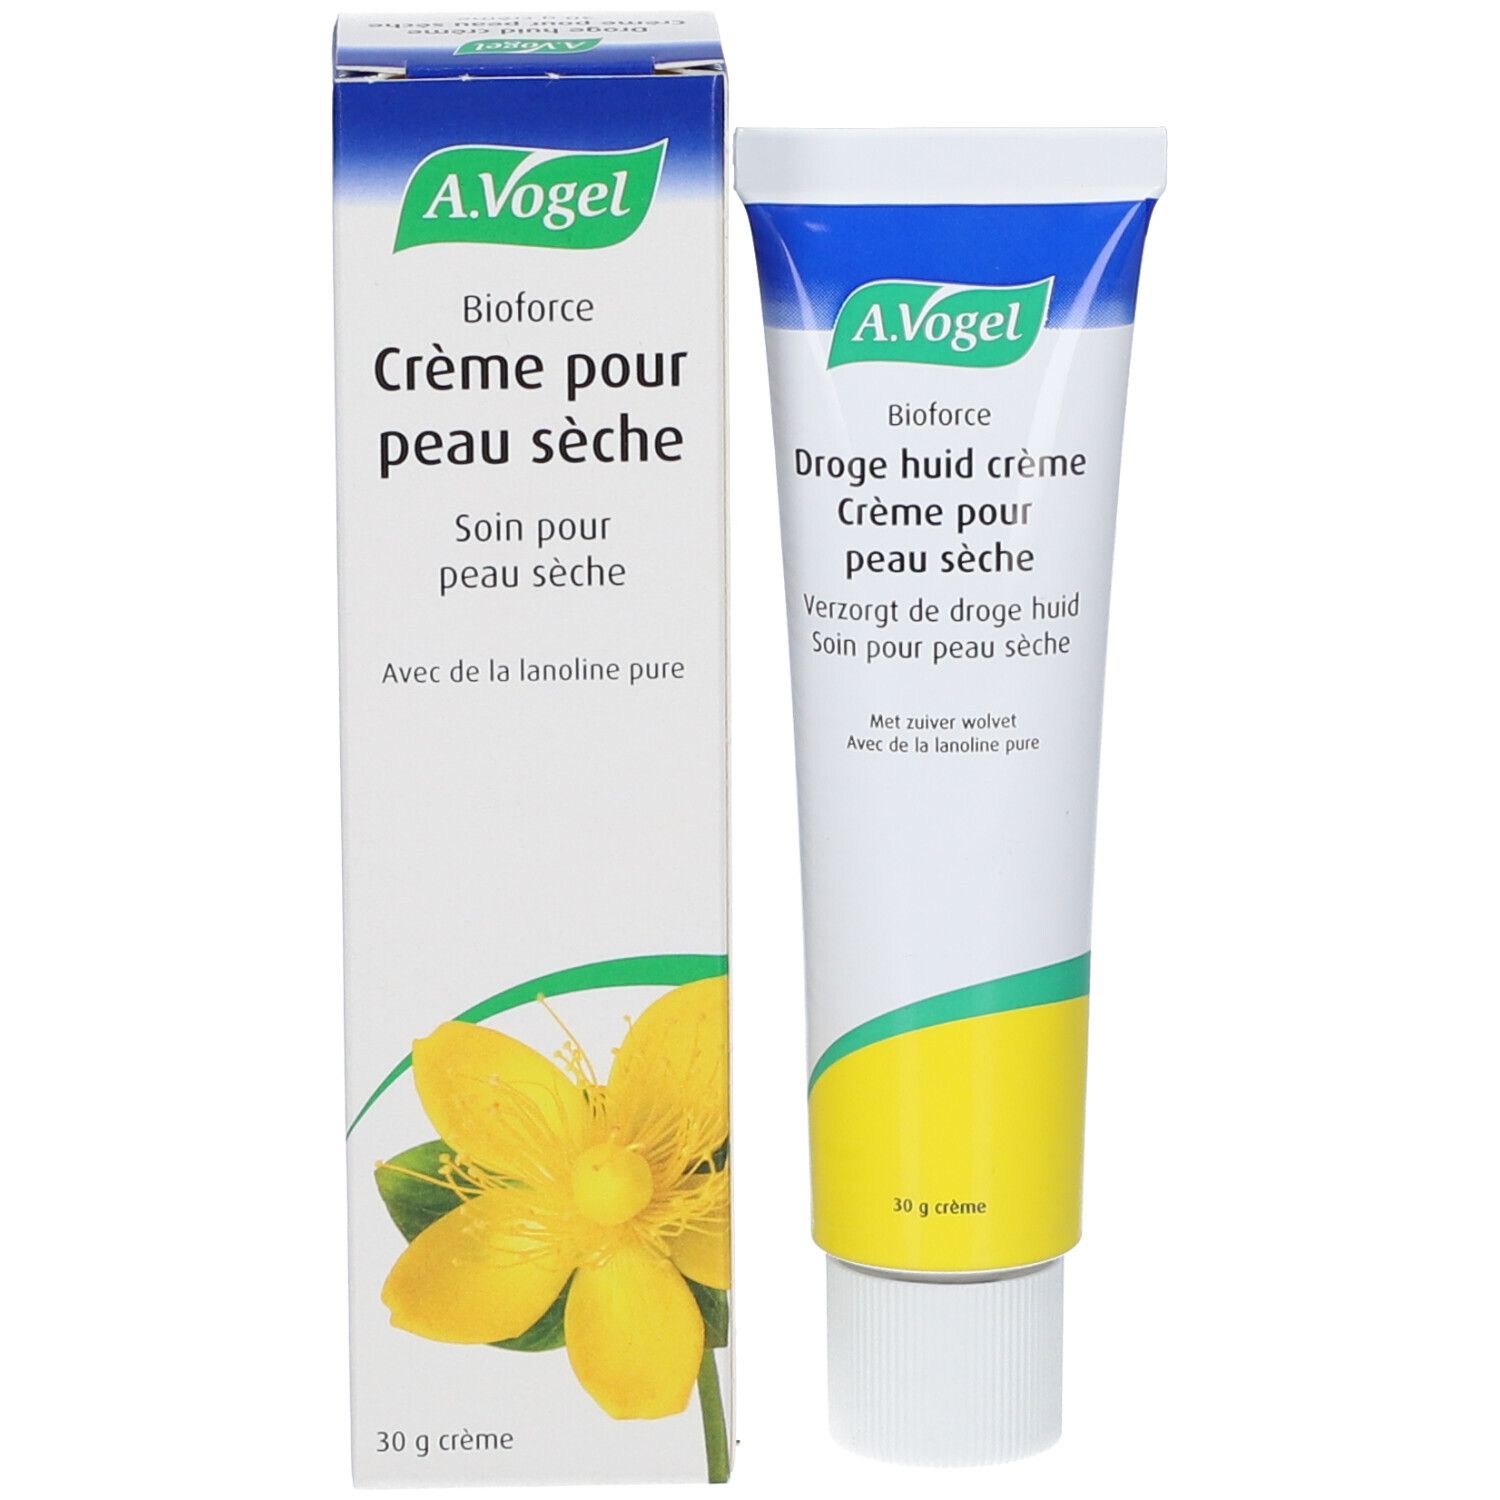 A.Vogel Bioforce Cream